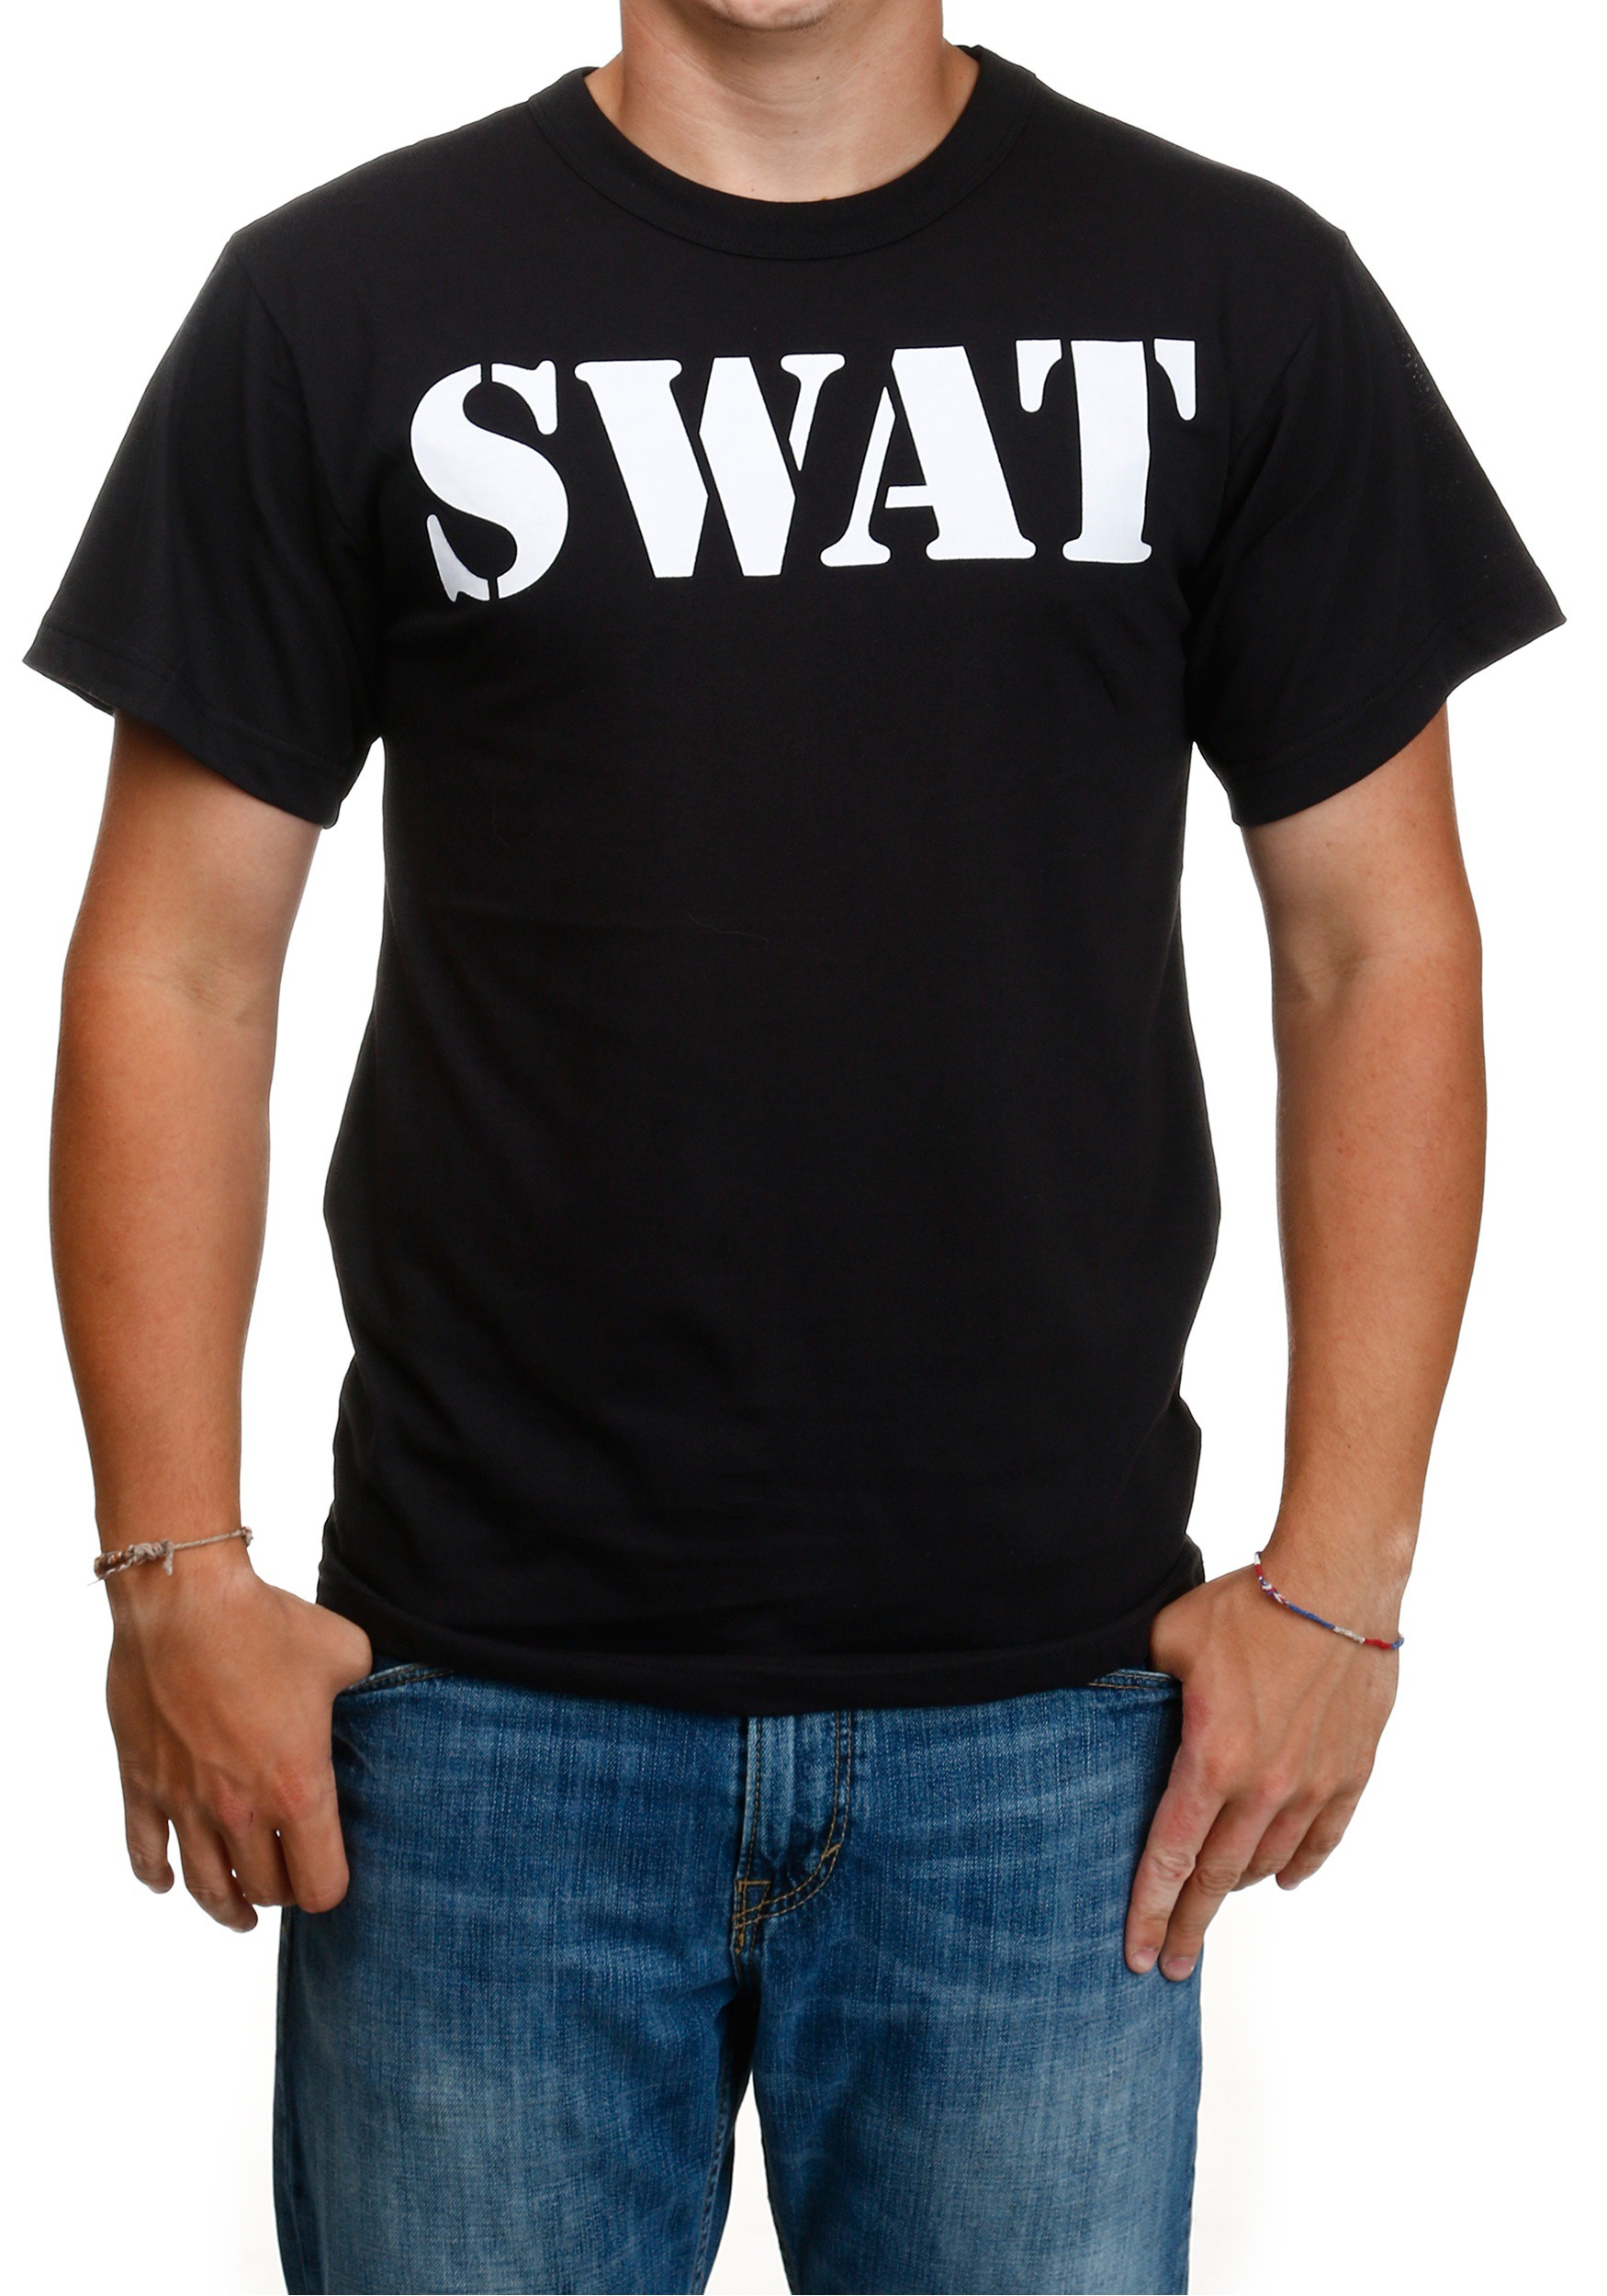 Camiseta Black Swat para adultos Multicolor Colombia